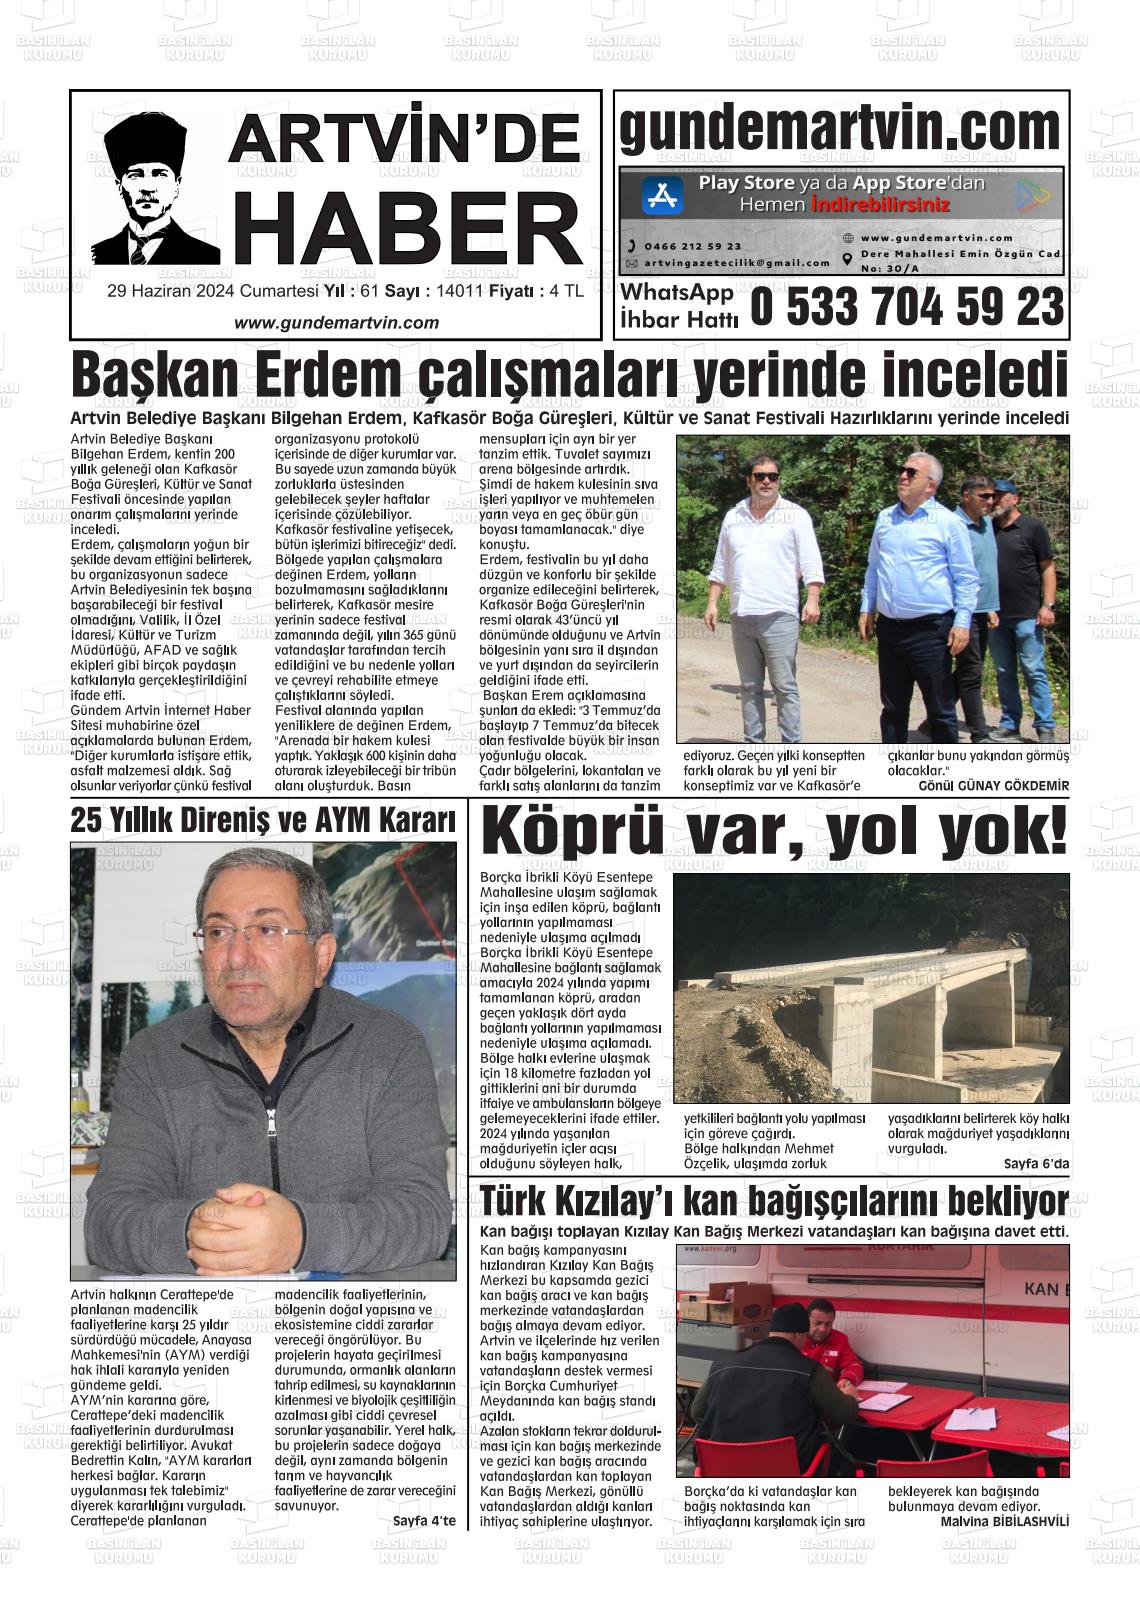 ARTVİN'DE HABER Gazetesi